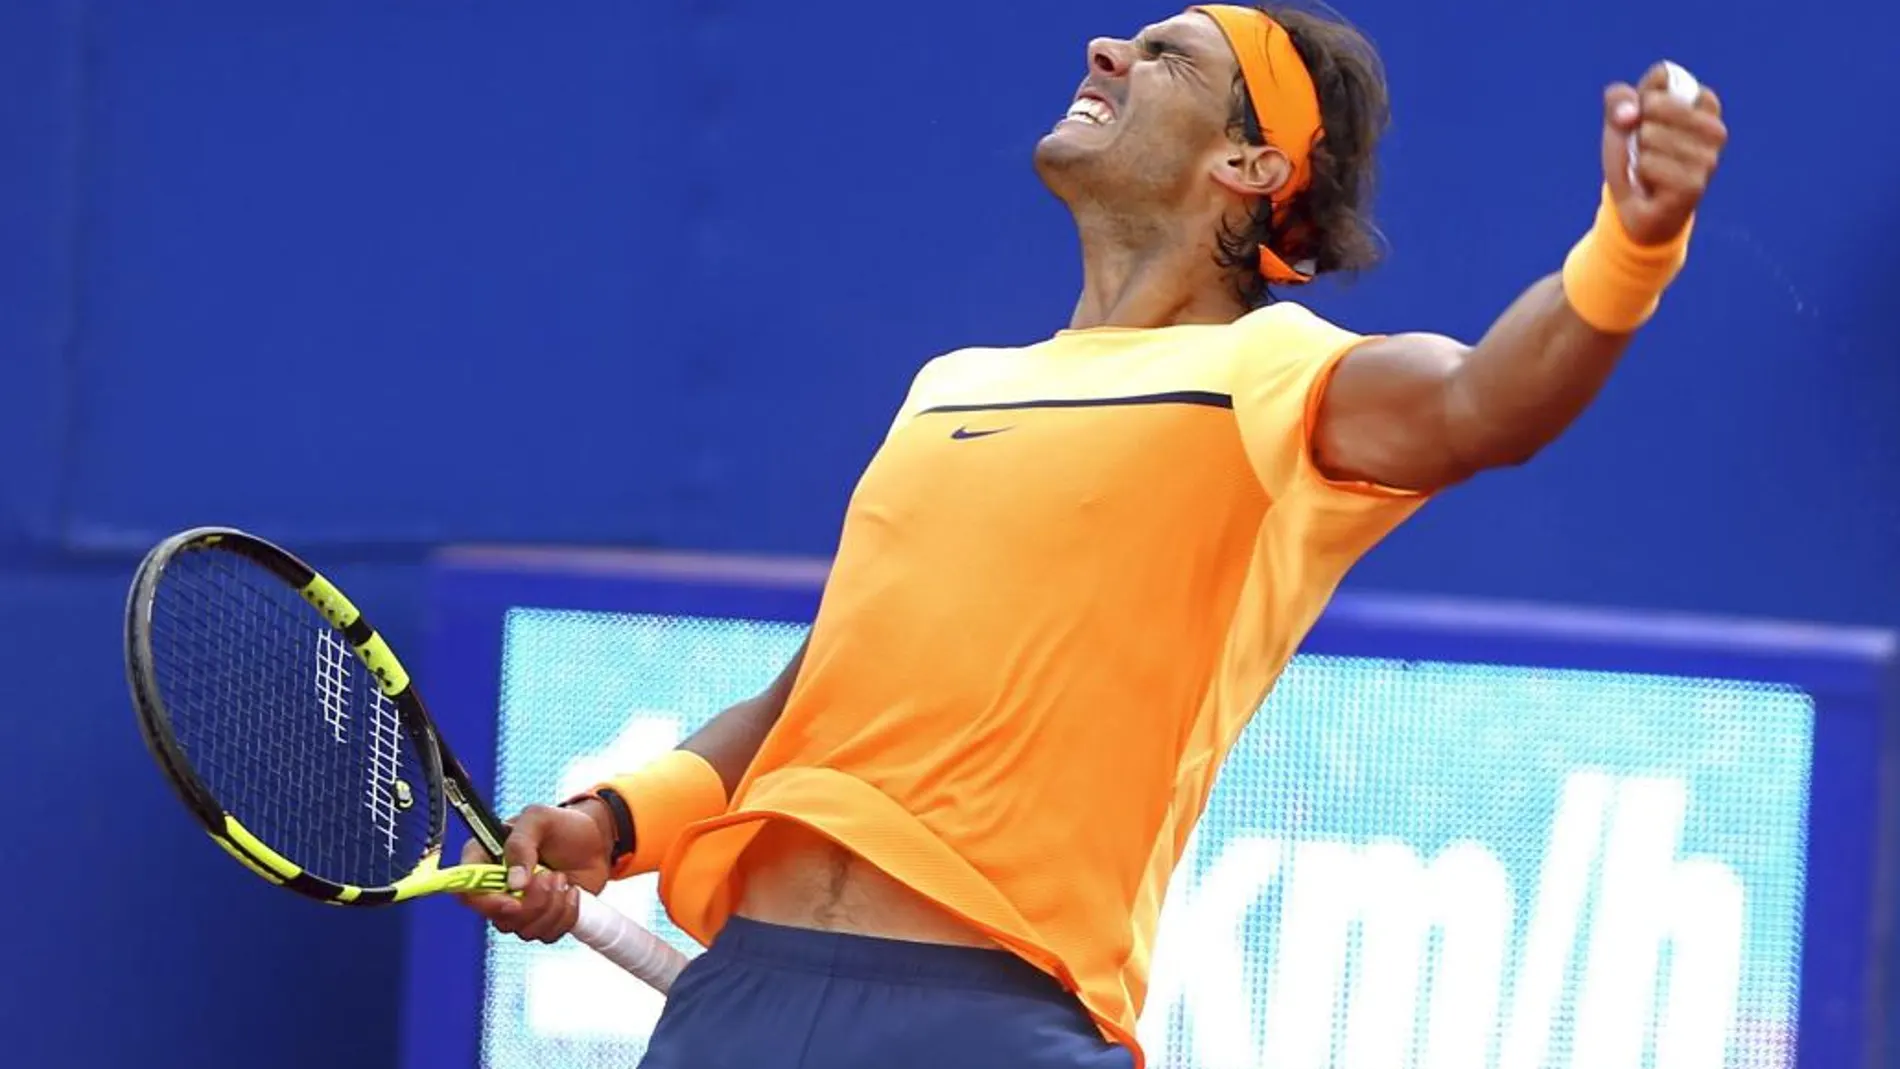 El tenista español Rafael Nadal celebra su victoria al finalizar el partido de semifinales